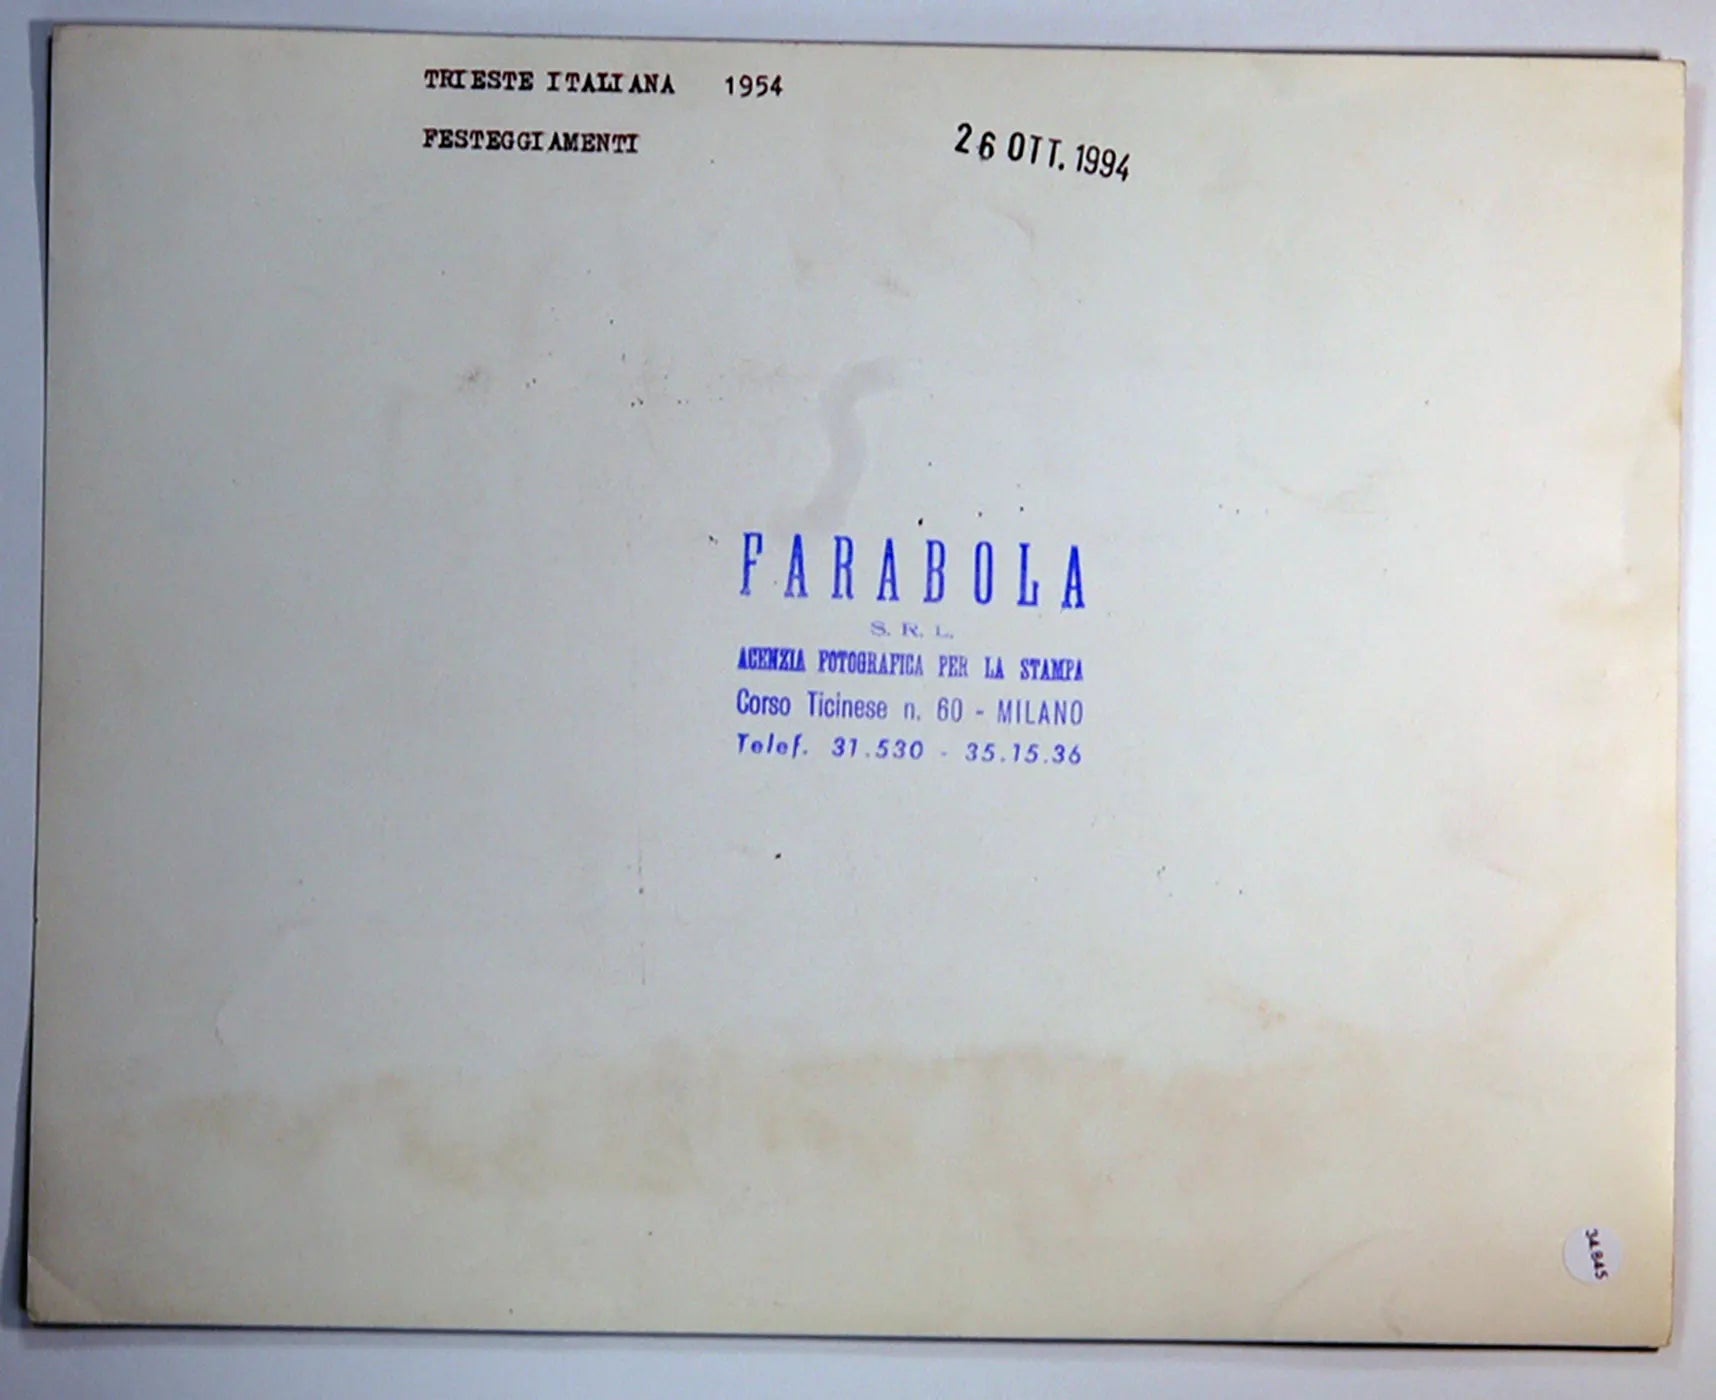 Trieste italiana Festeggiamenti 1954 Ft 34845 - Stampa 21x27 cm - Farabola Stampa ai sali d'argento